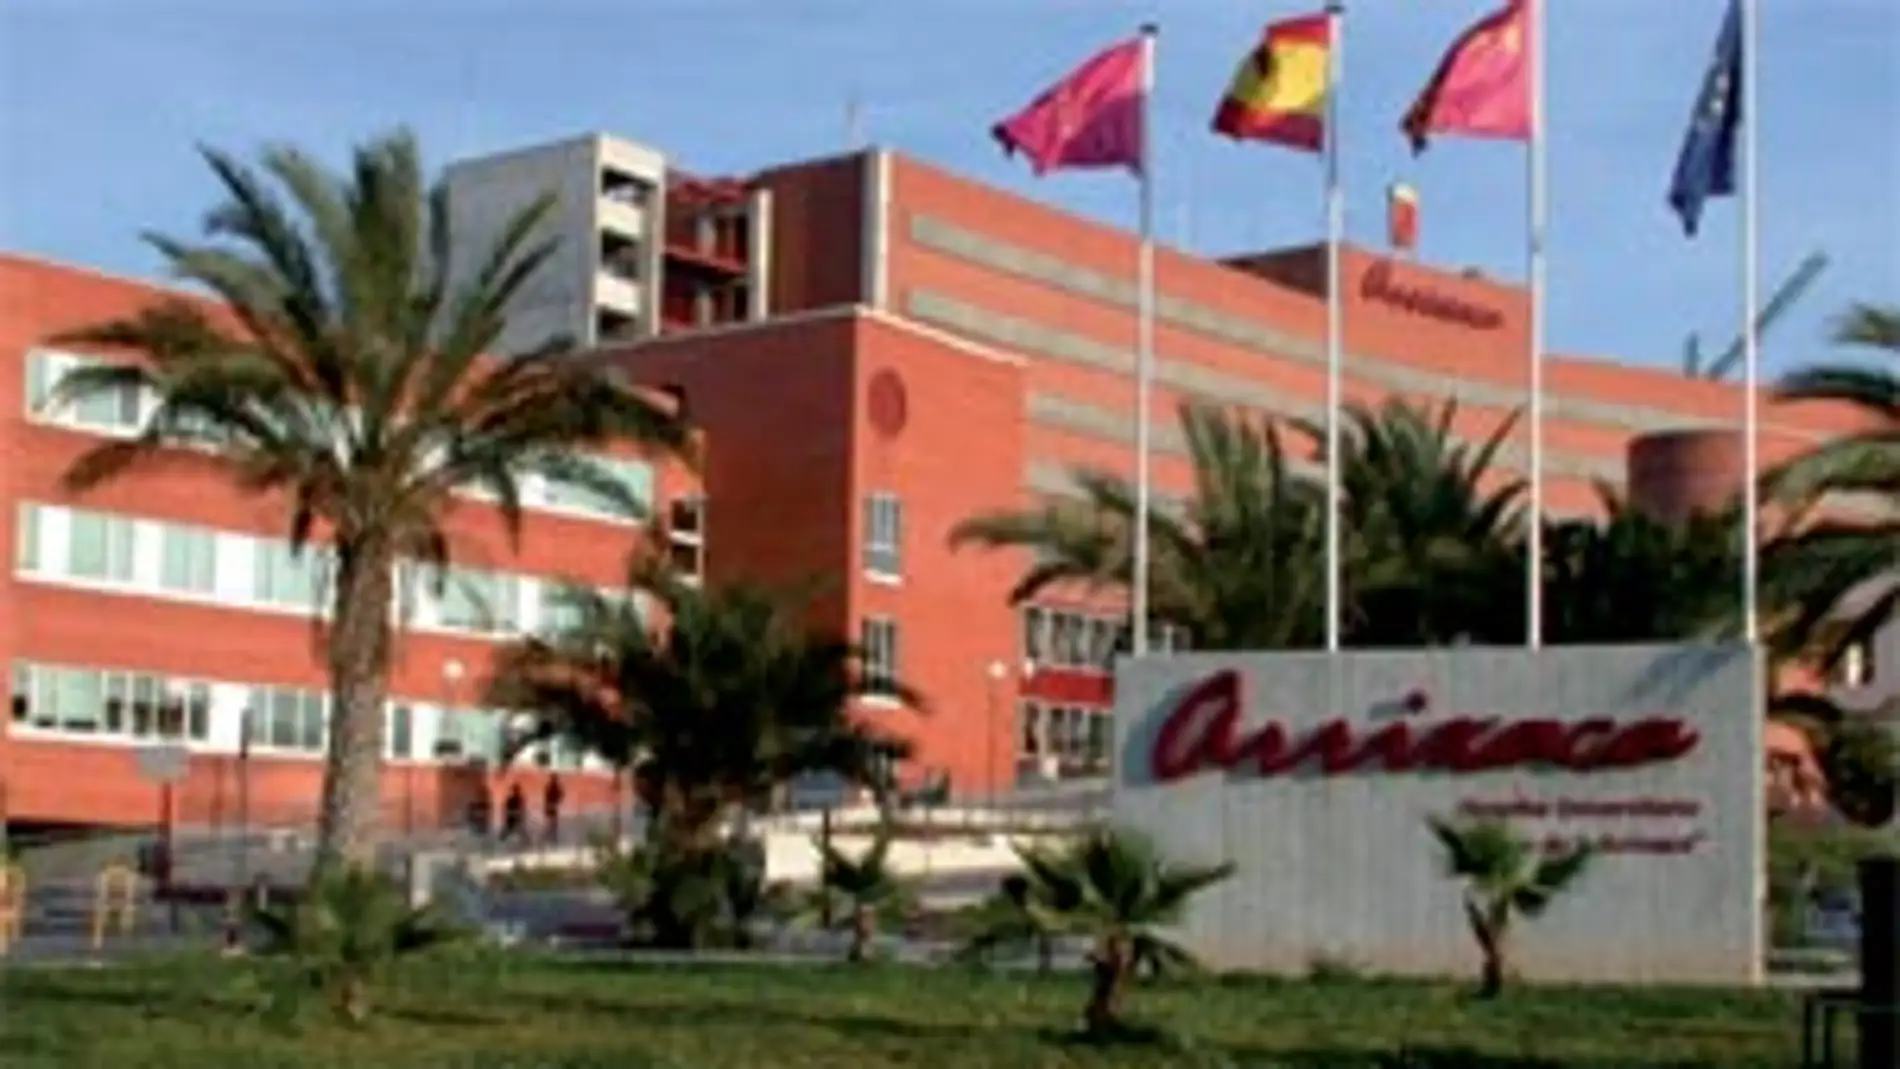 Suspendidas las visitas a los hospitales de la Región por el aumento incesante de contagios por Covid